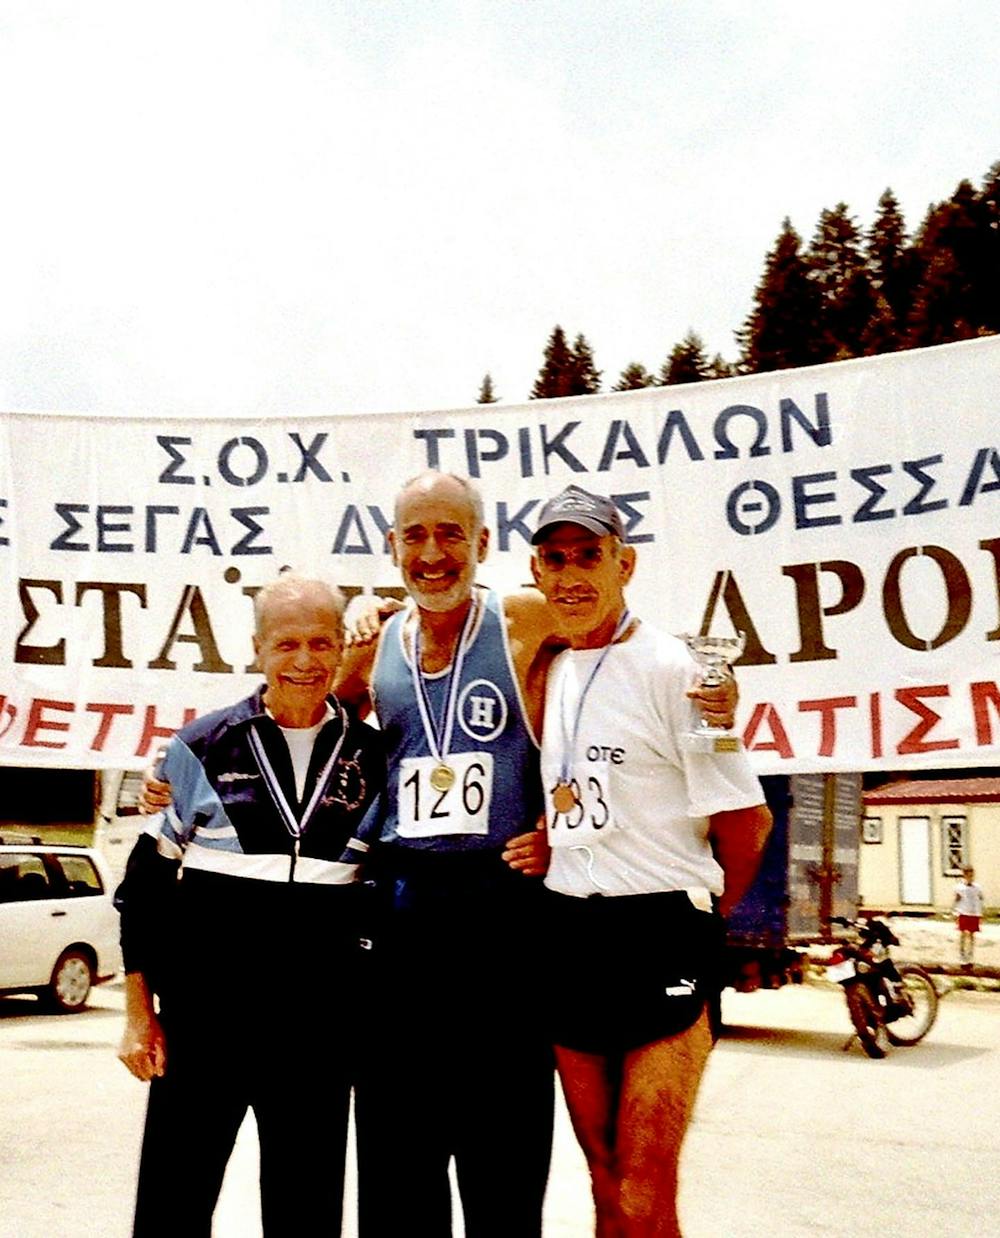 Ιούλιος Άμποτ: Από το «δεν μπορείς να κάνεις βήμα από το κρεβάτι» το 1961 στο Νυχτερινό Ημιμαραθώνιο Θεσσαλονίκης το 2022! runbeat.gr 